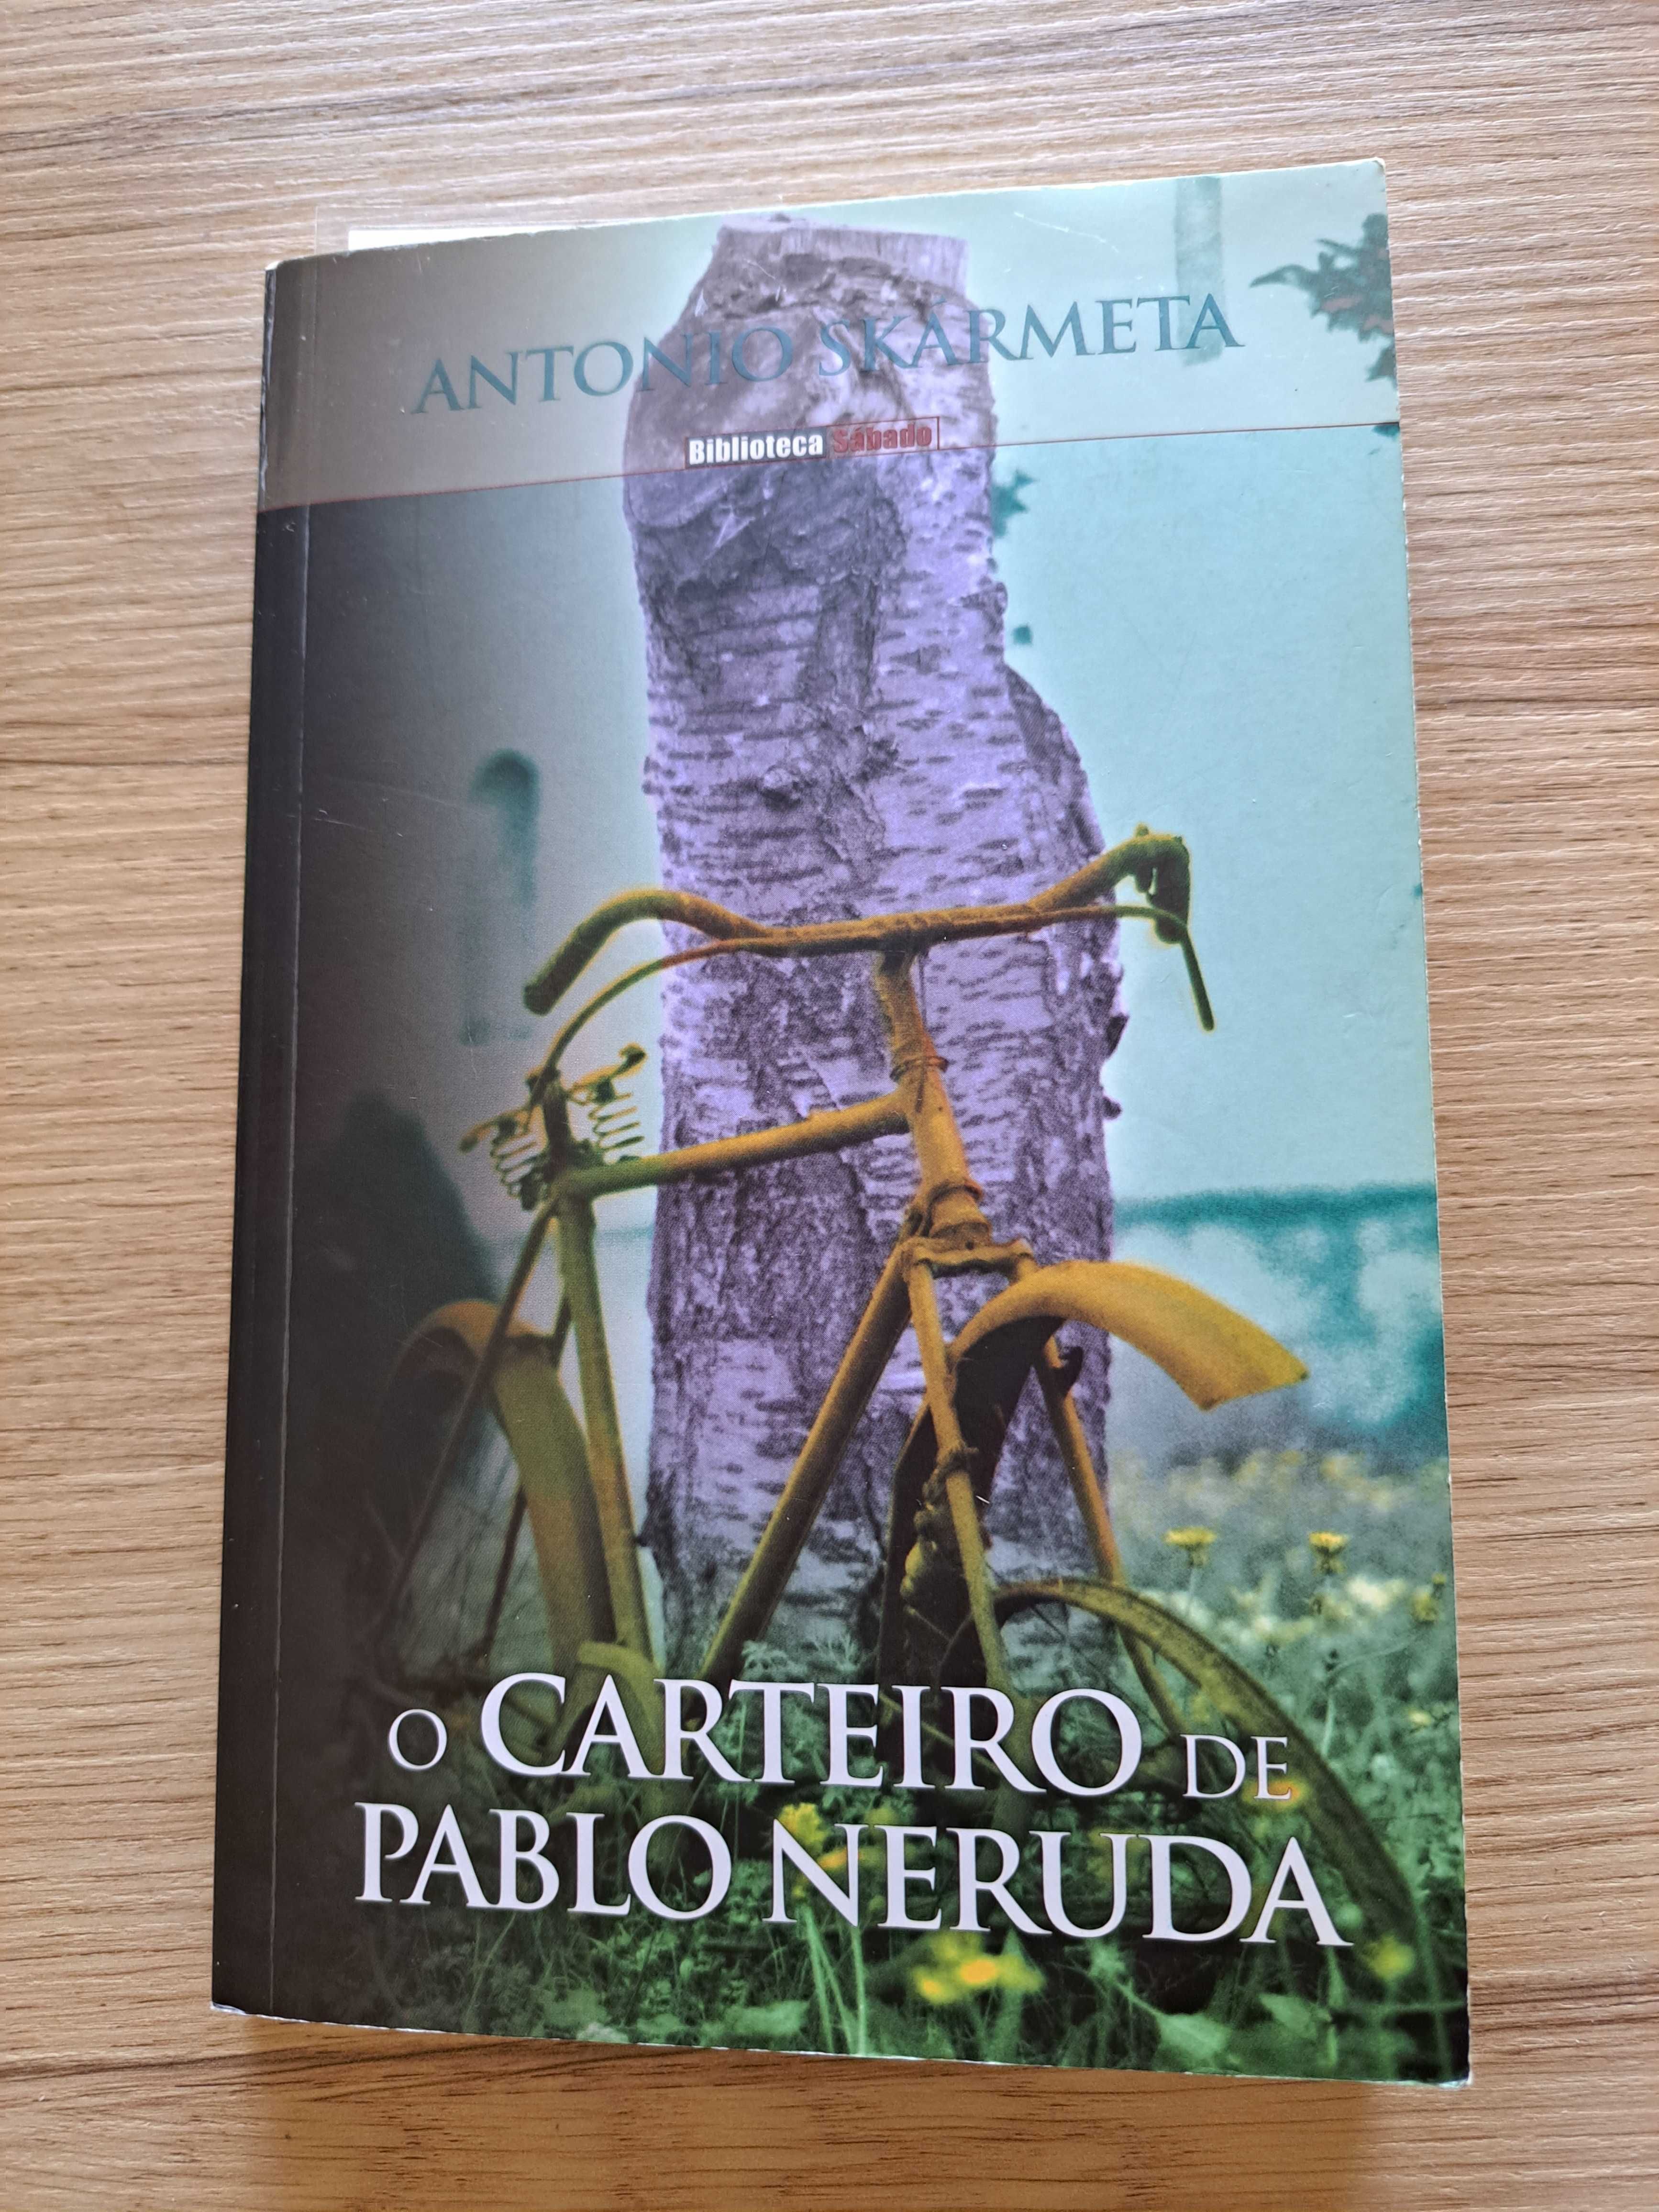 Livro de António Skarmeta, O carteiro de Pablo Neruda